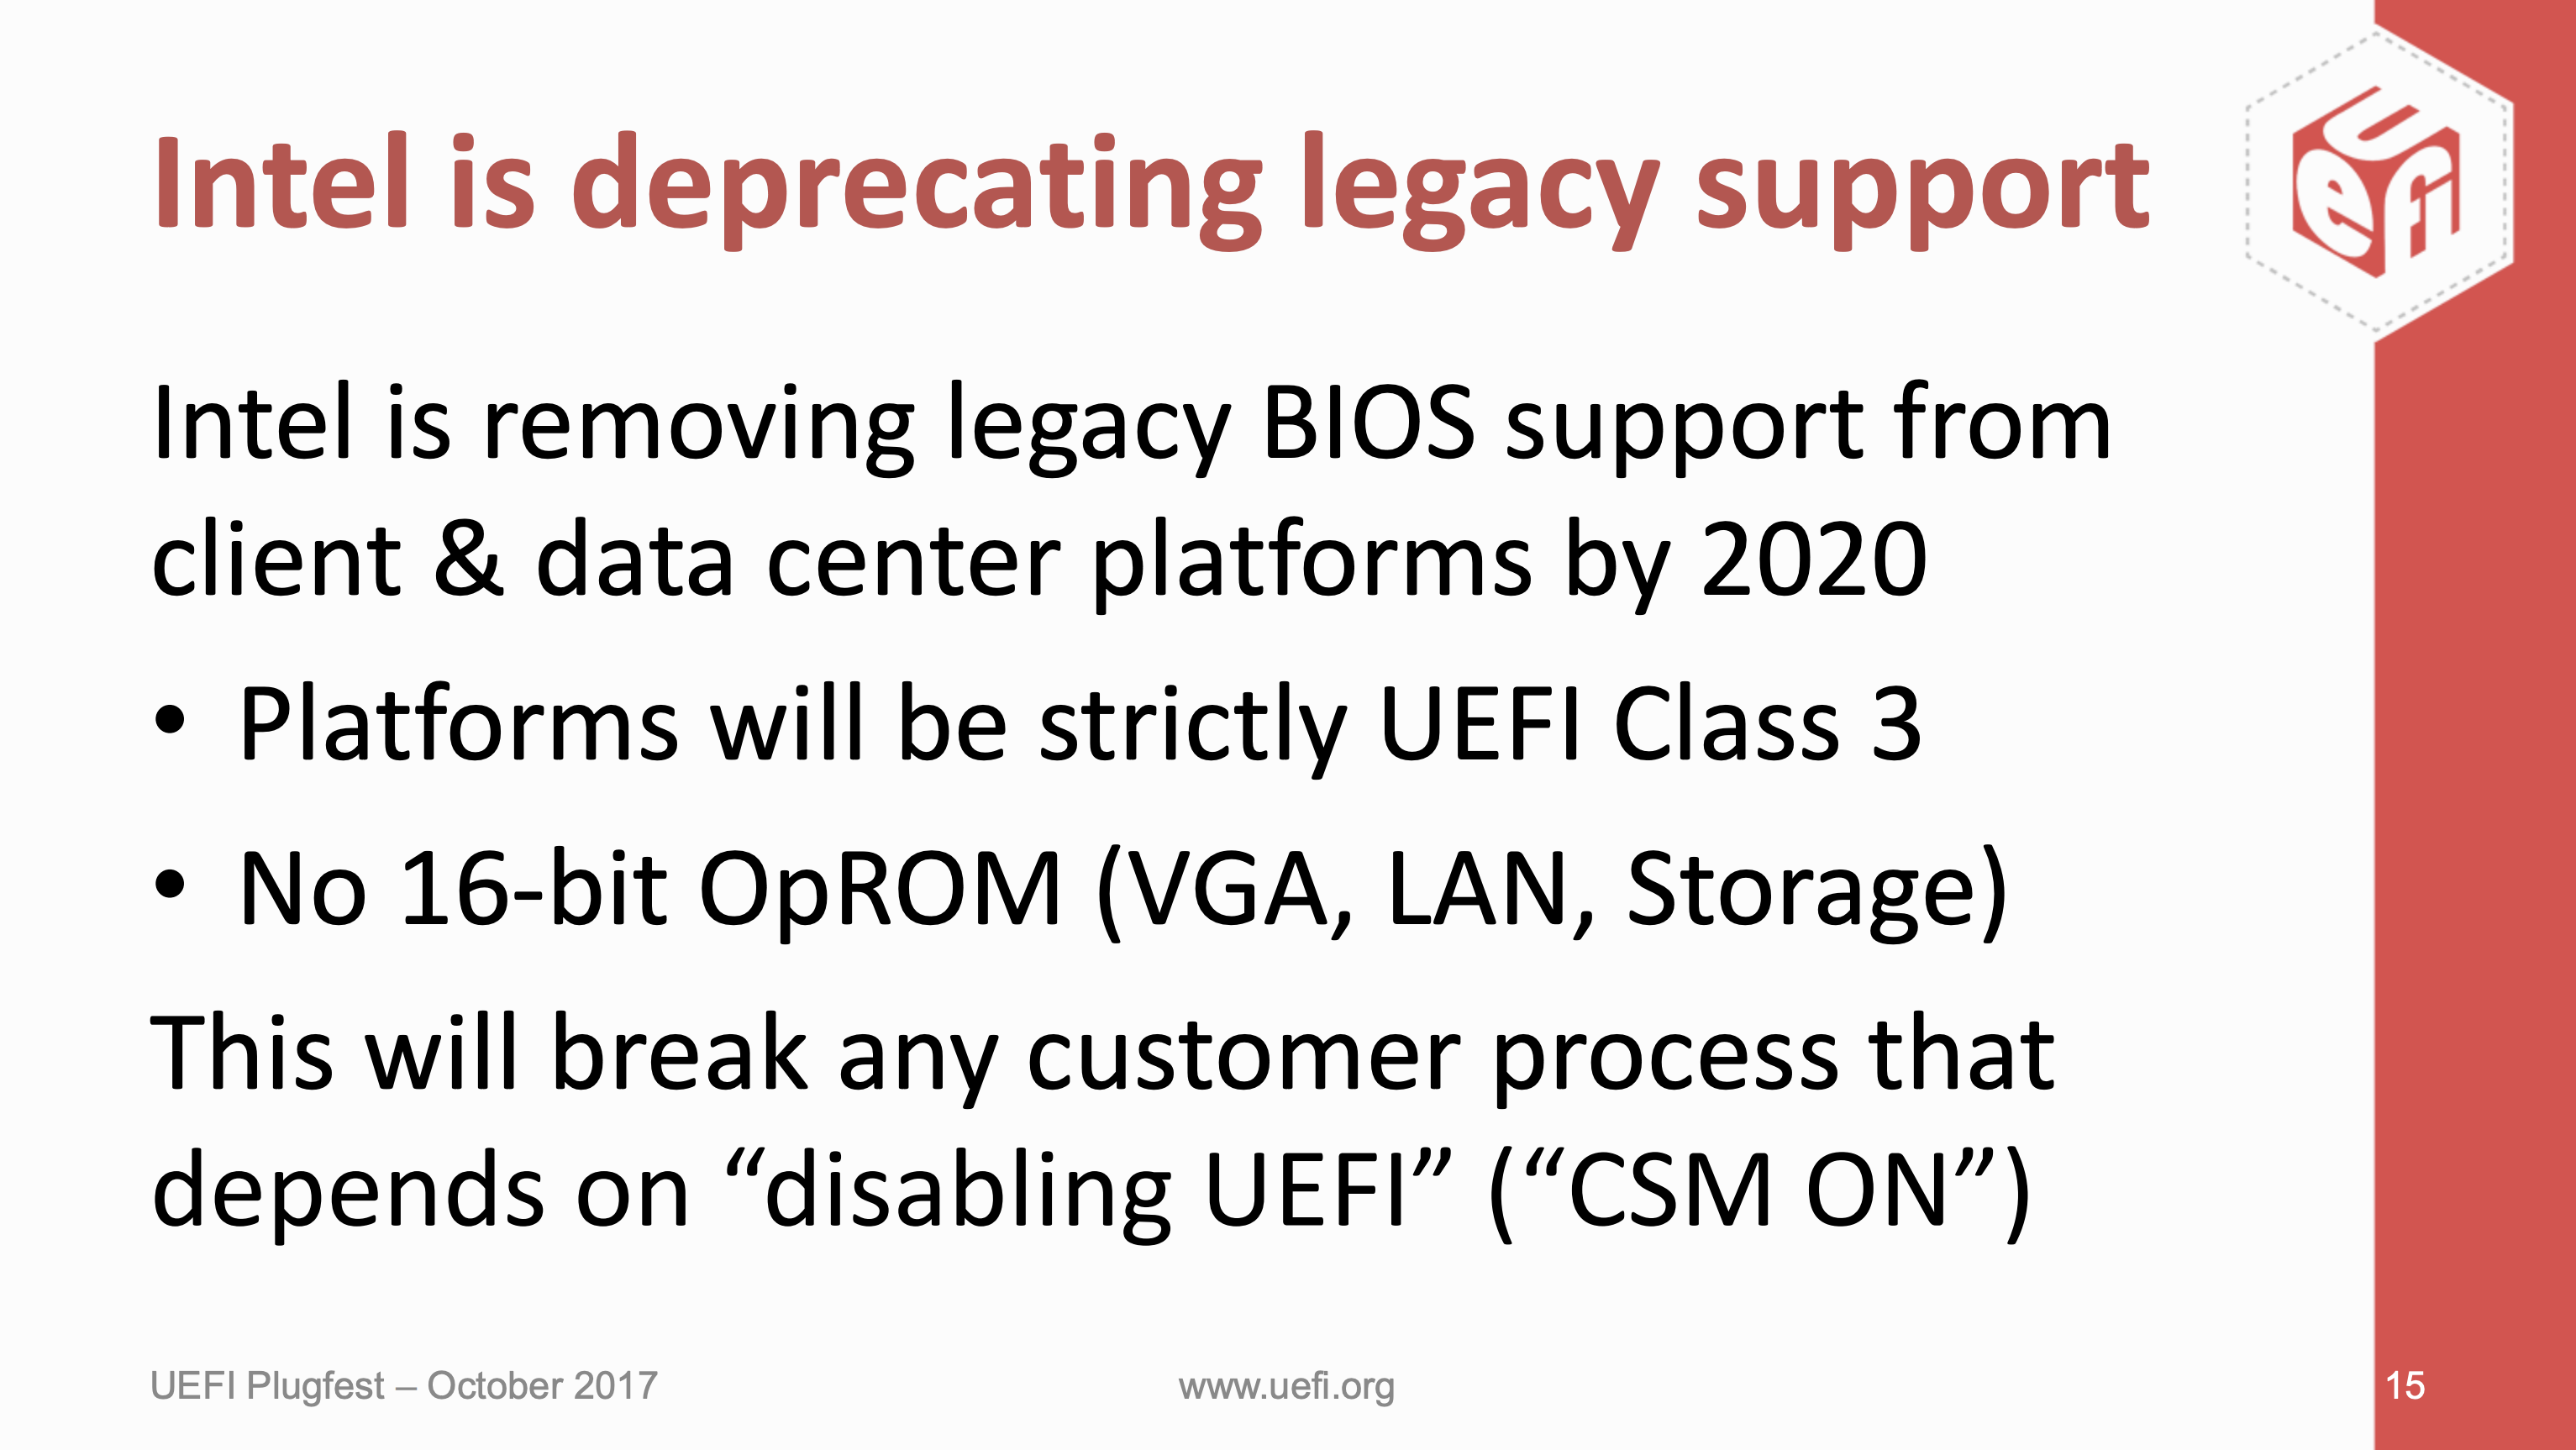 Intelは2020年までにLegacy BIOSのサポートを終了する予定